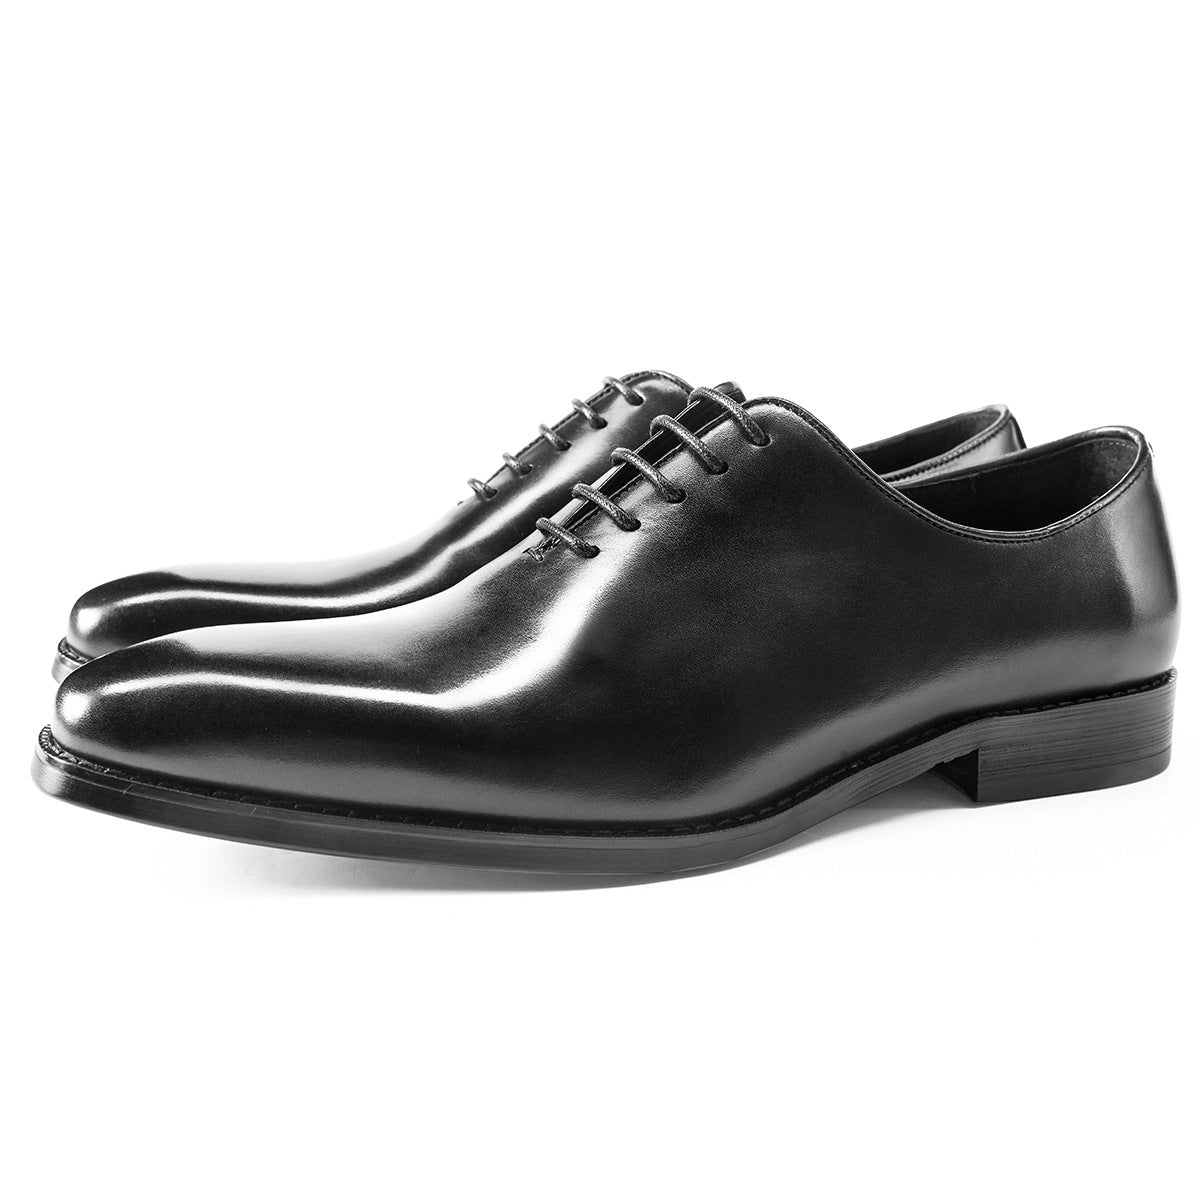 Einteilige Oxford-Schuhe für Herren – handgefertigte Business-Lederschuhe aus gebürstetem Leder